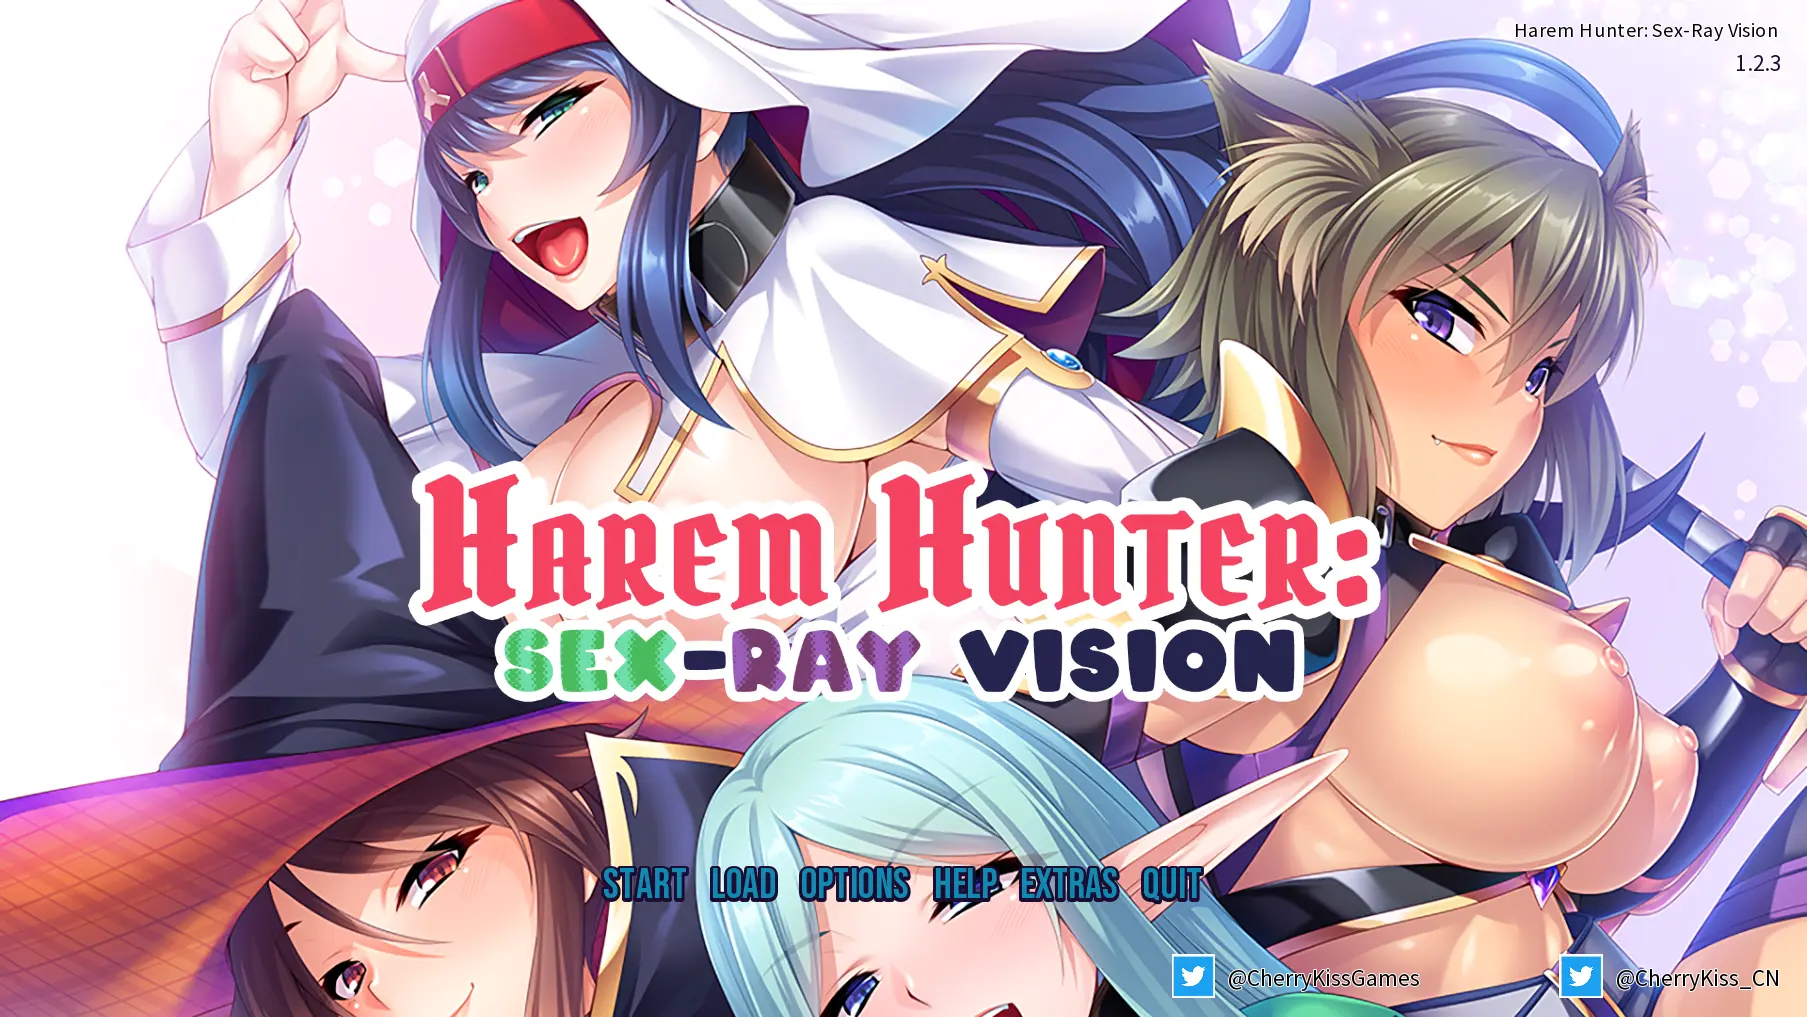 Harem Hunter: Sex-ray Vision main image